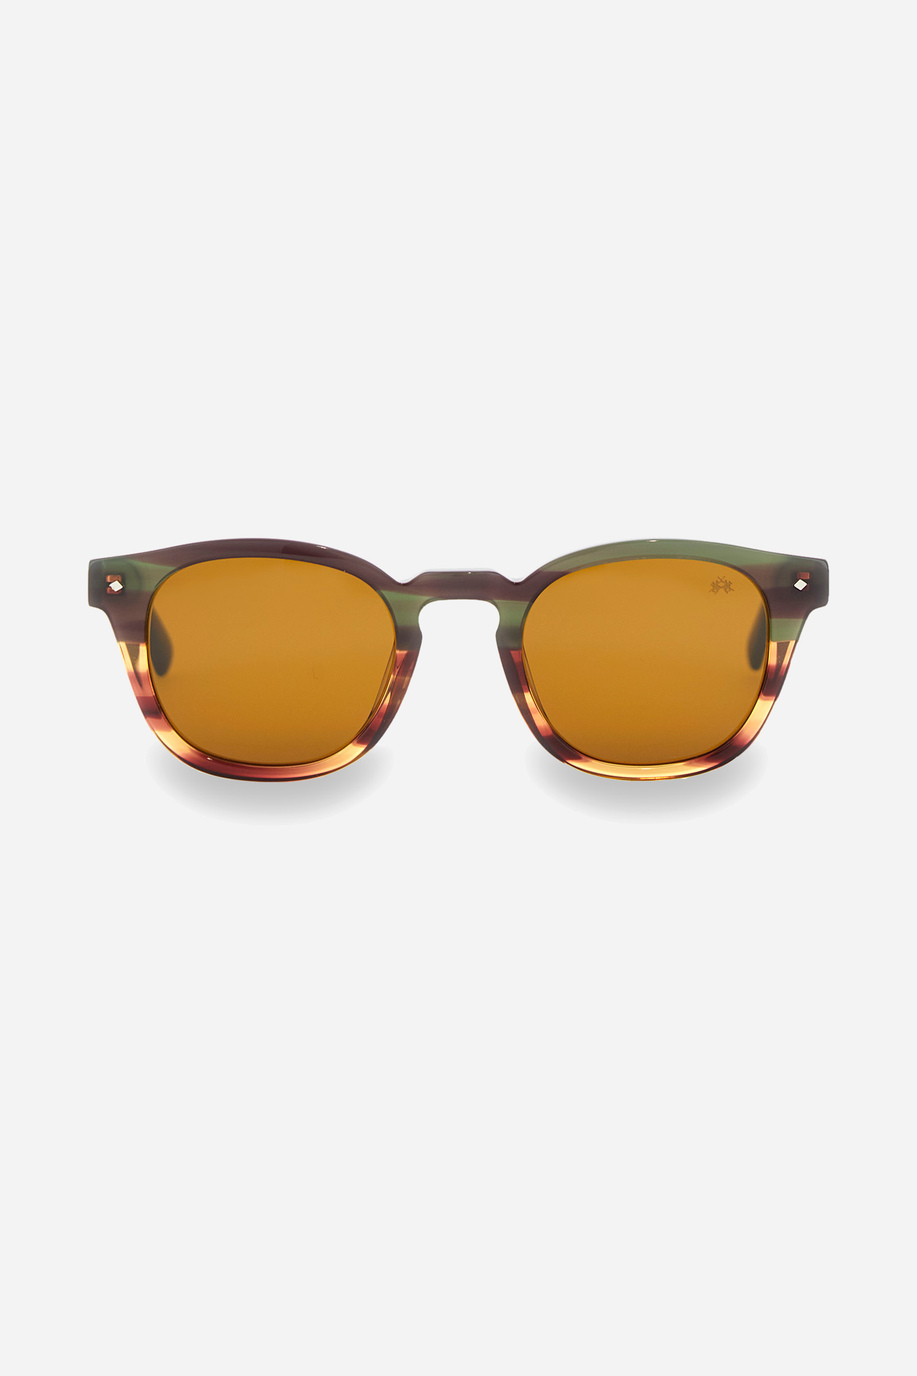 Sunglasses men model pantos - Glasses | La Martina - Official Online Shop